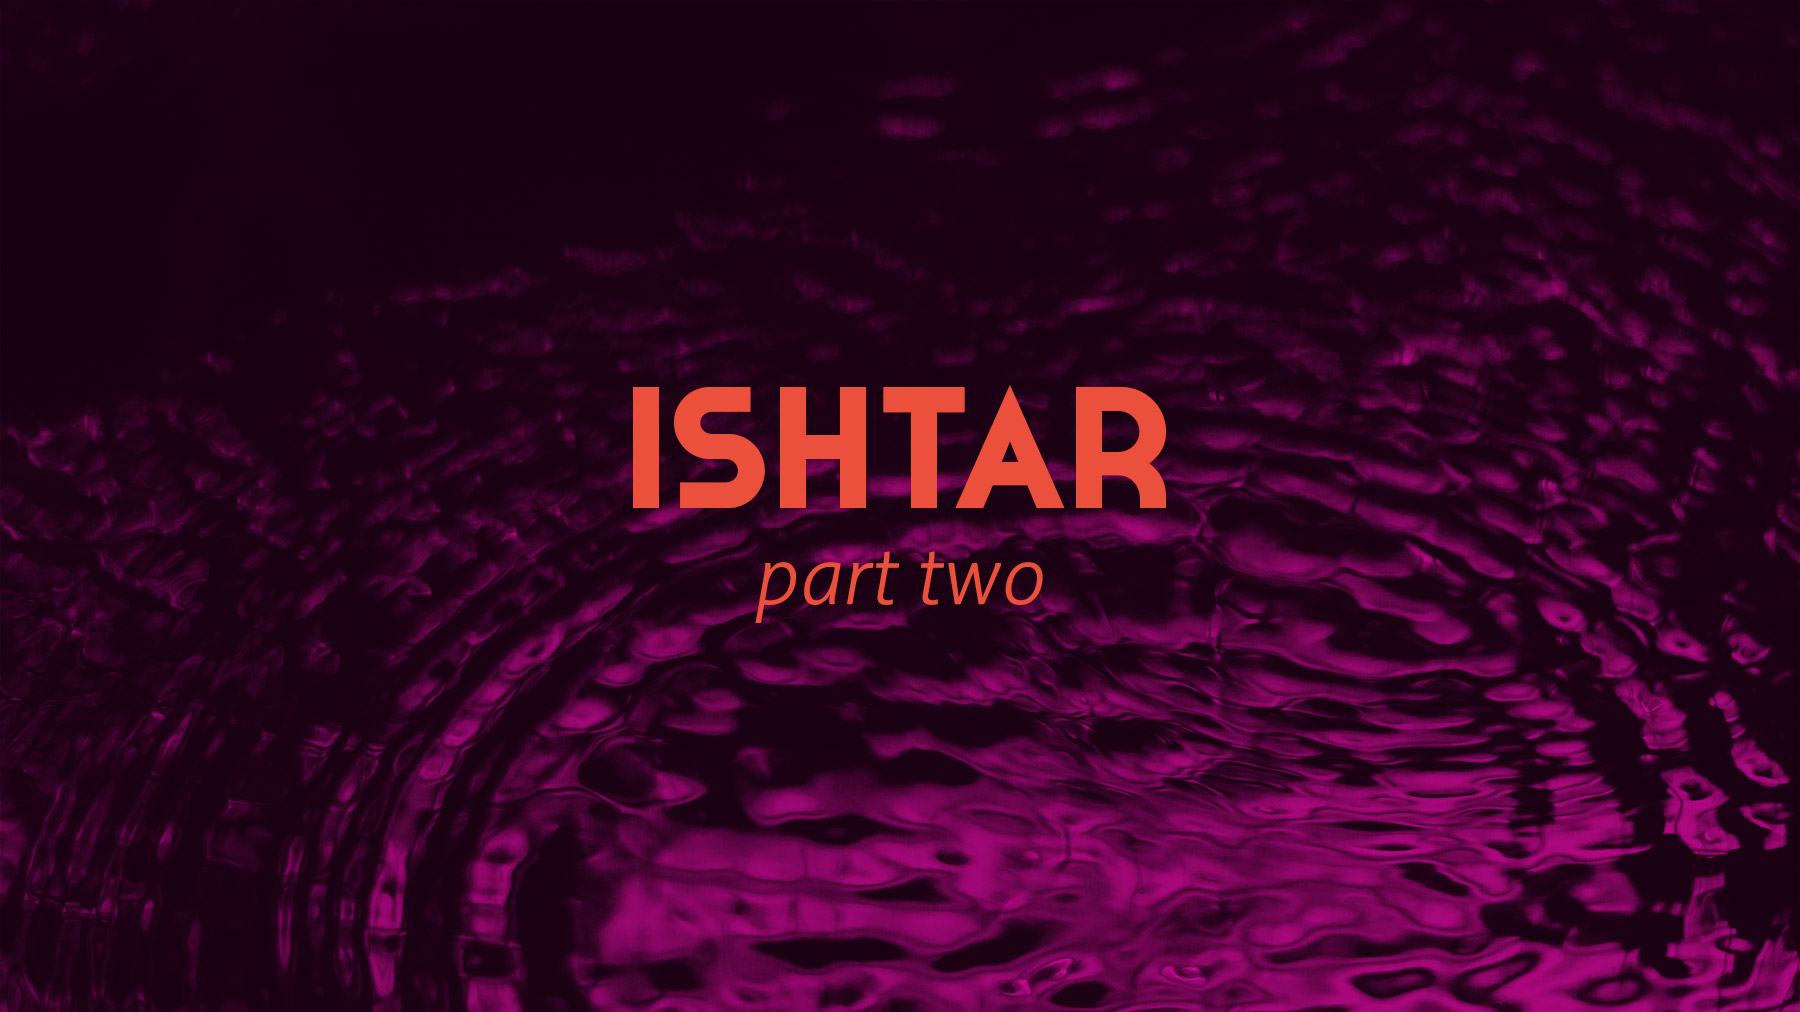 Ishtar Part 2 - The Pool of Ishtar